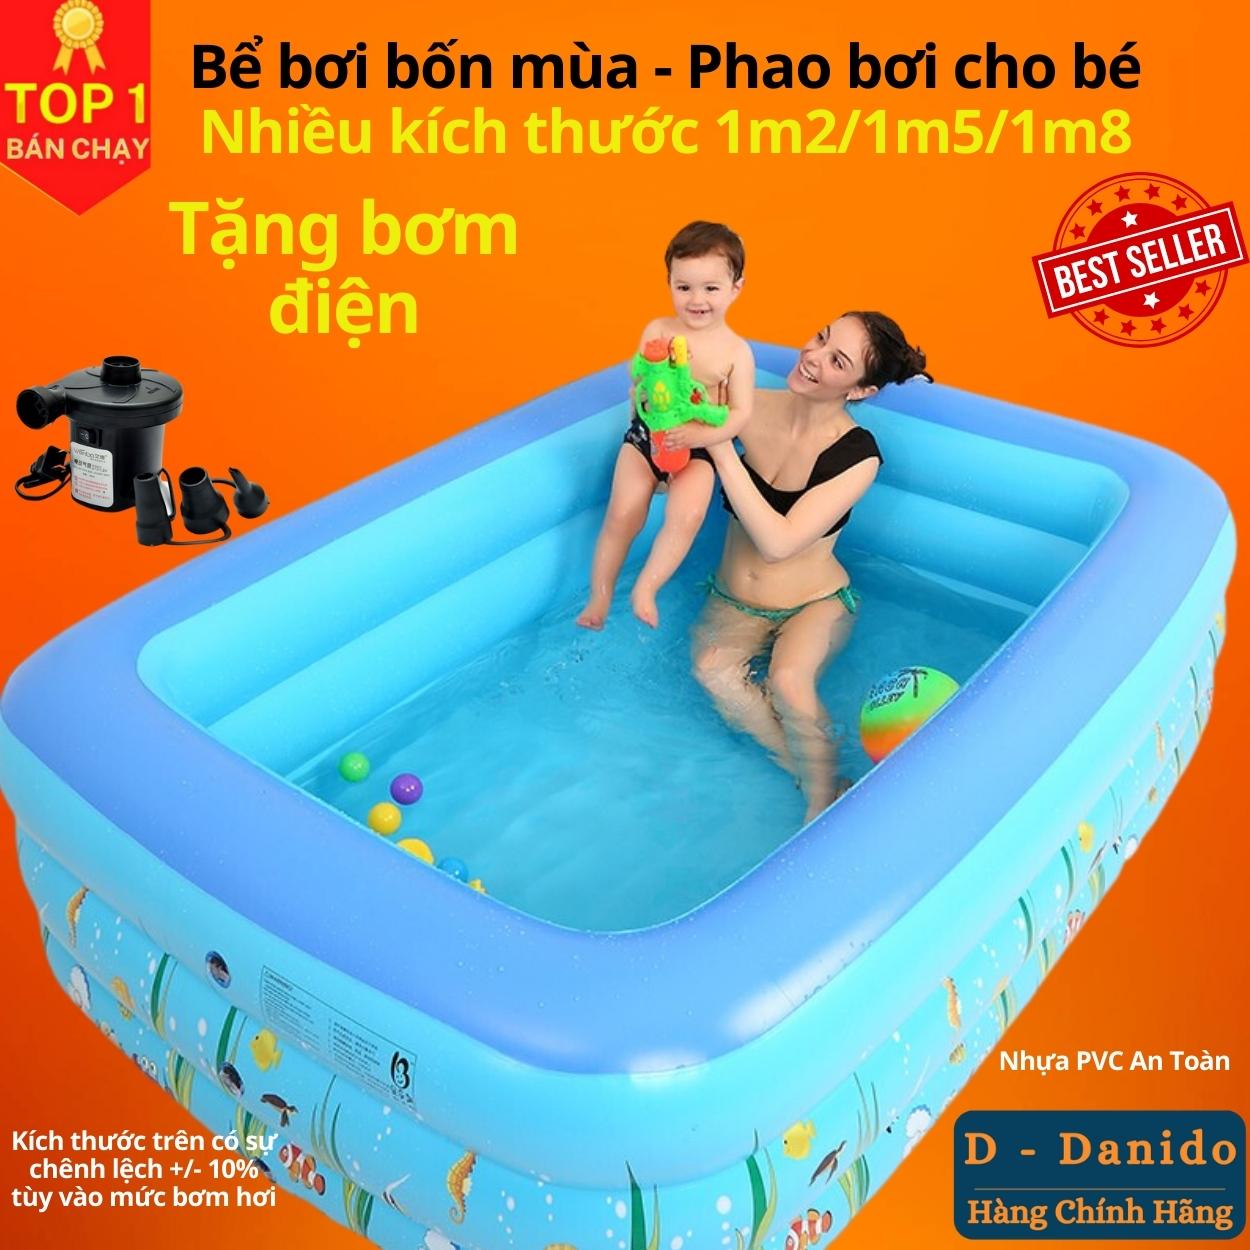 Bể bơi bơm hơi trẻ em chính hãng D Danido, Phao bơi cho bé 1.2m/1.5m/1.8m chất lượng, bền đẹp, 2 tầng - 3 tầng, dày dặn, chống trượt, Bể bơi cho bé, Hồ bơi nhân tạo